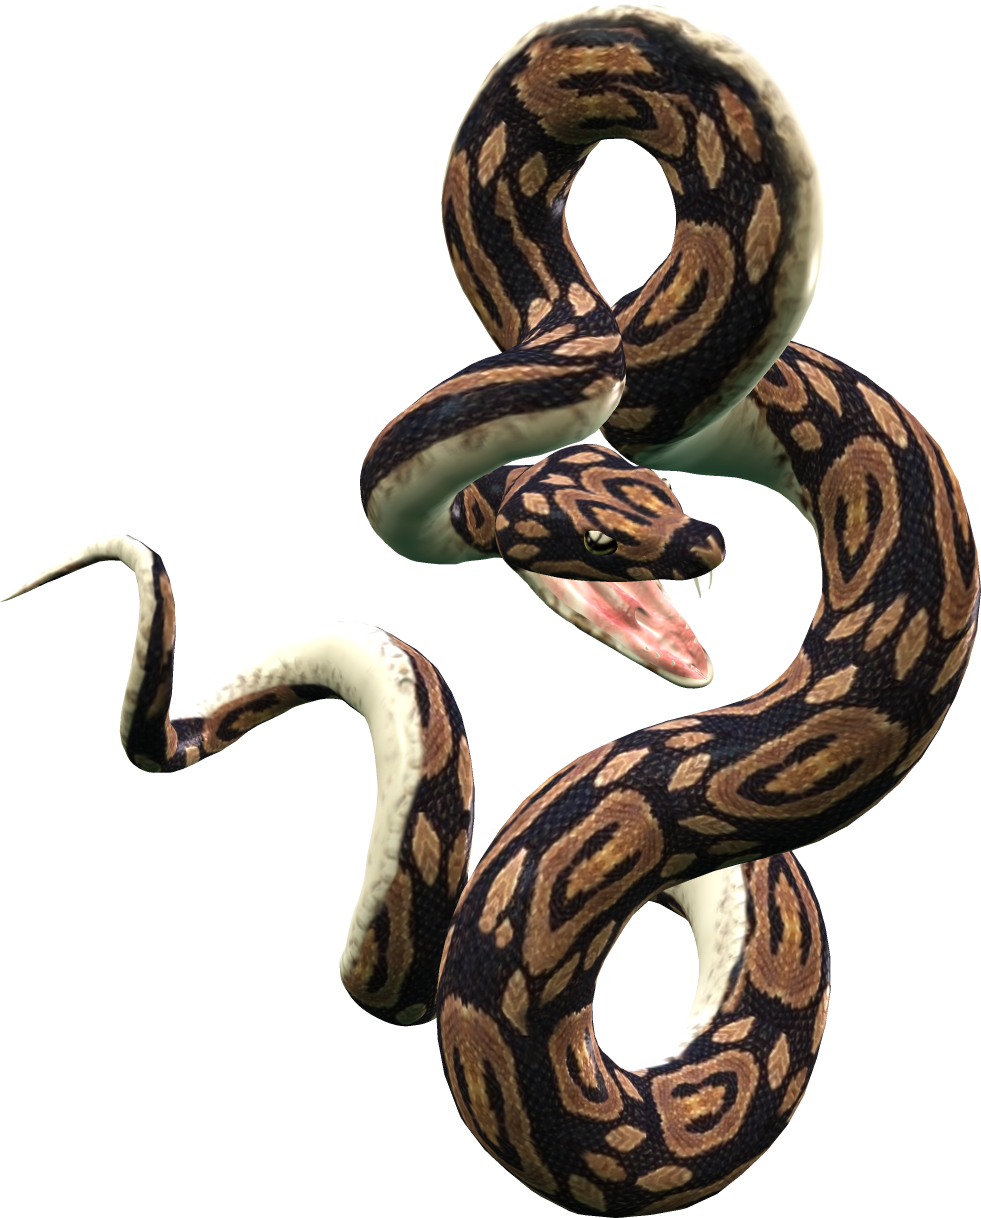 Snake PNG images Download